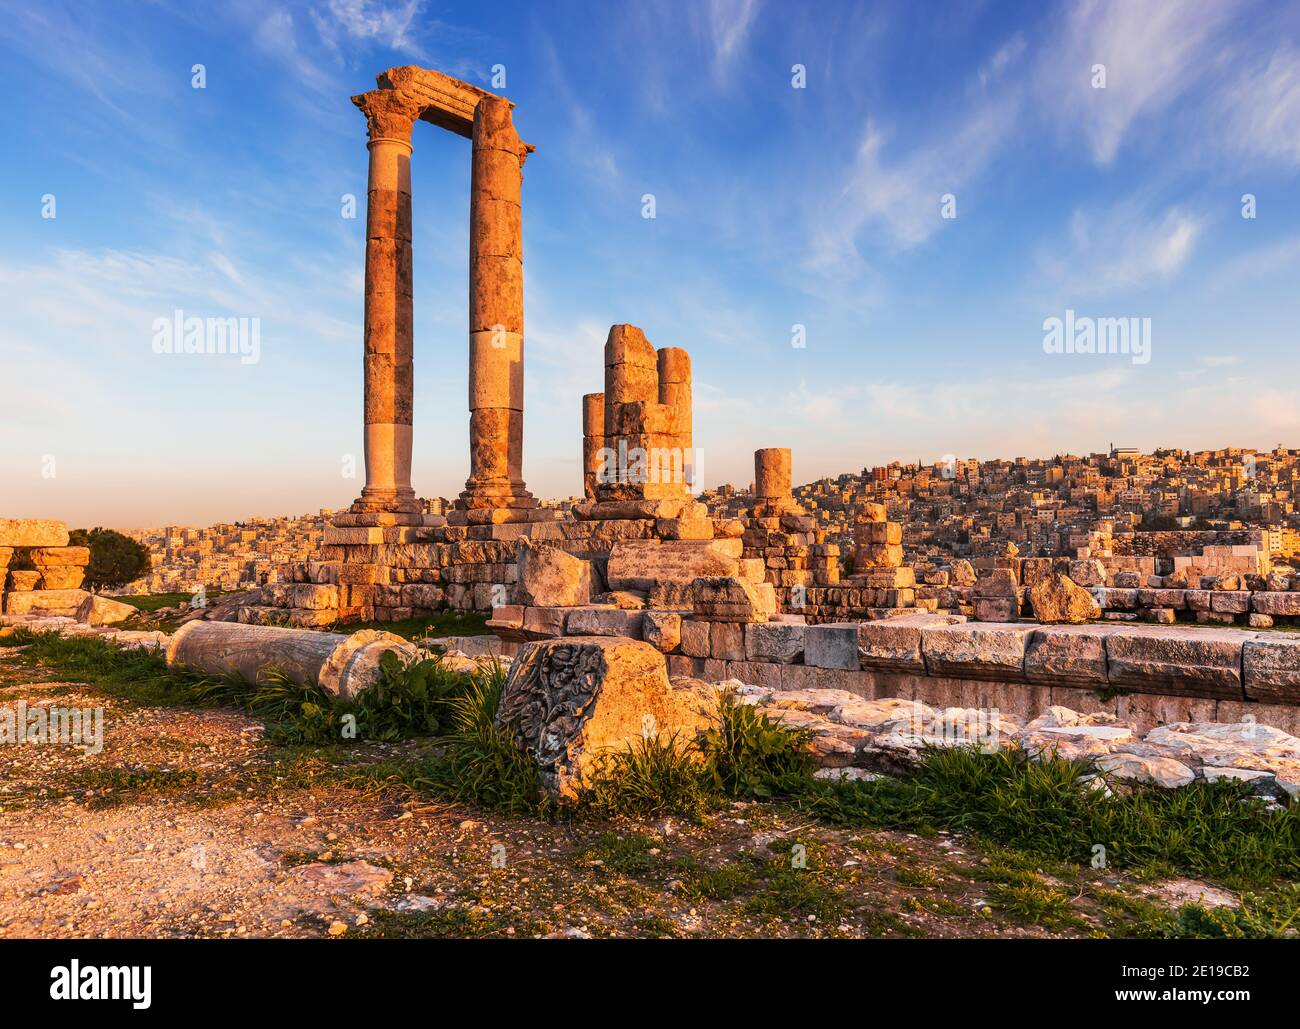 Amman, Jordan. The Temple of Hercules, Amman Citadel. Stock Photo